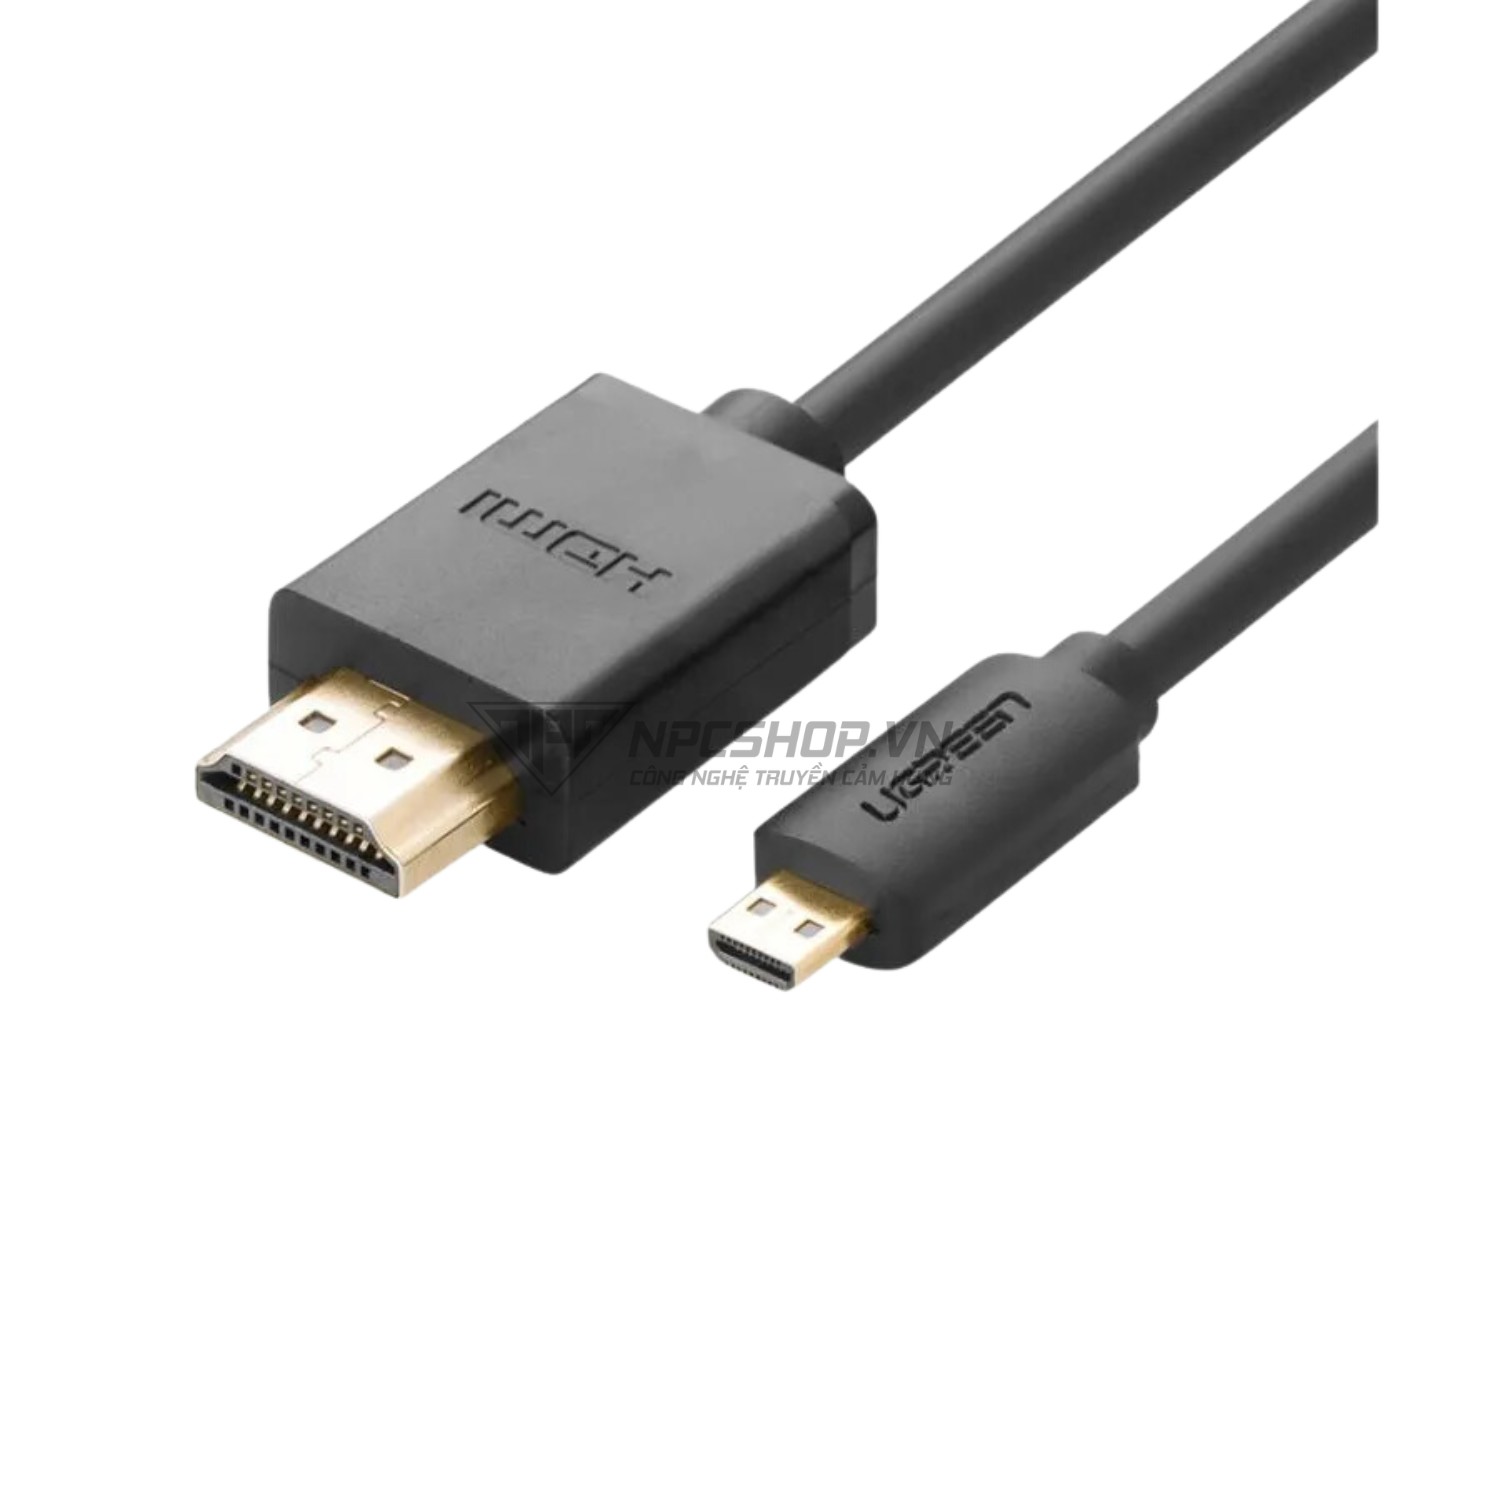 Cáp micro HDMI sang HDMI 1.4 dài 1M Ugreen (30148)